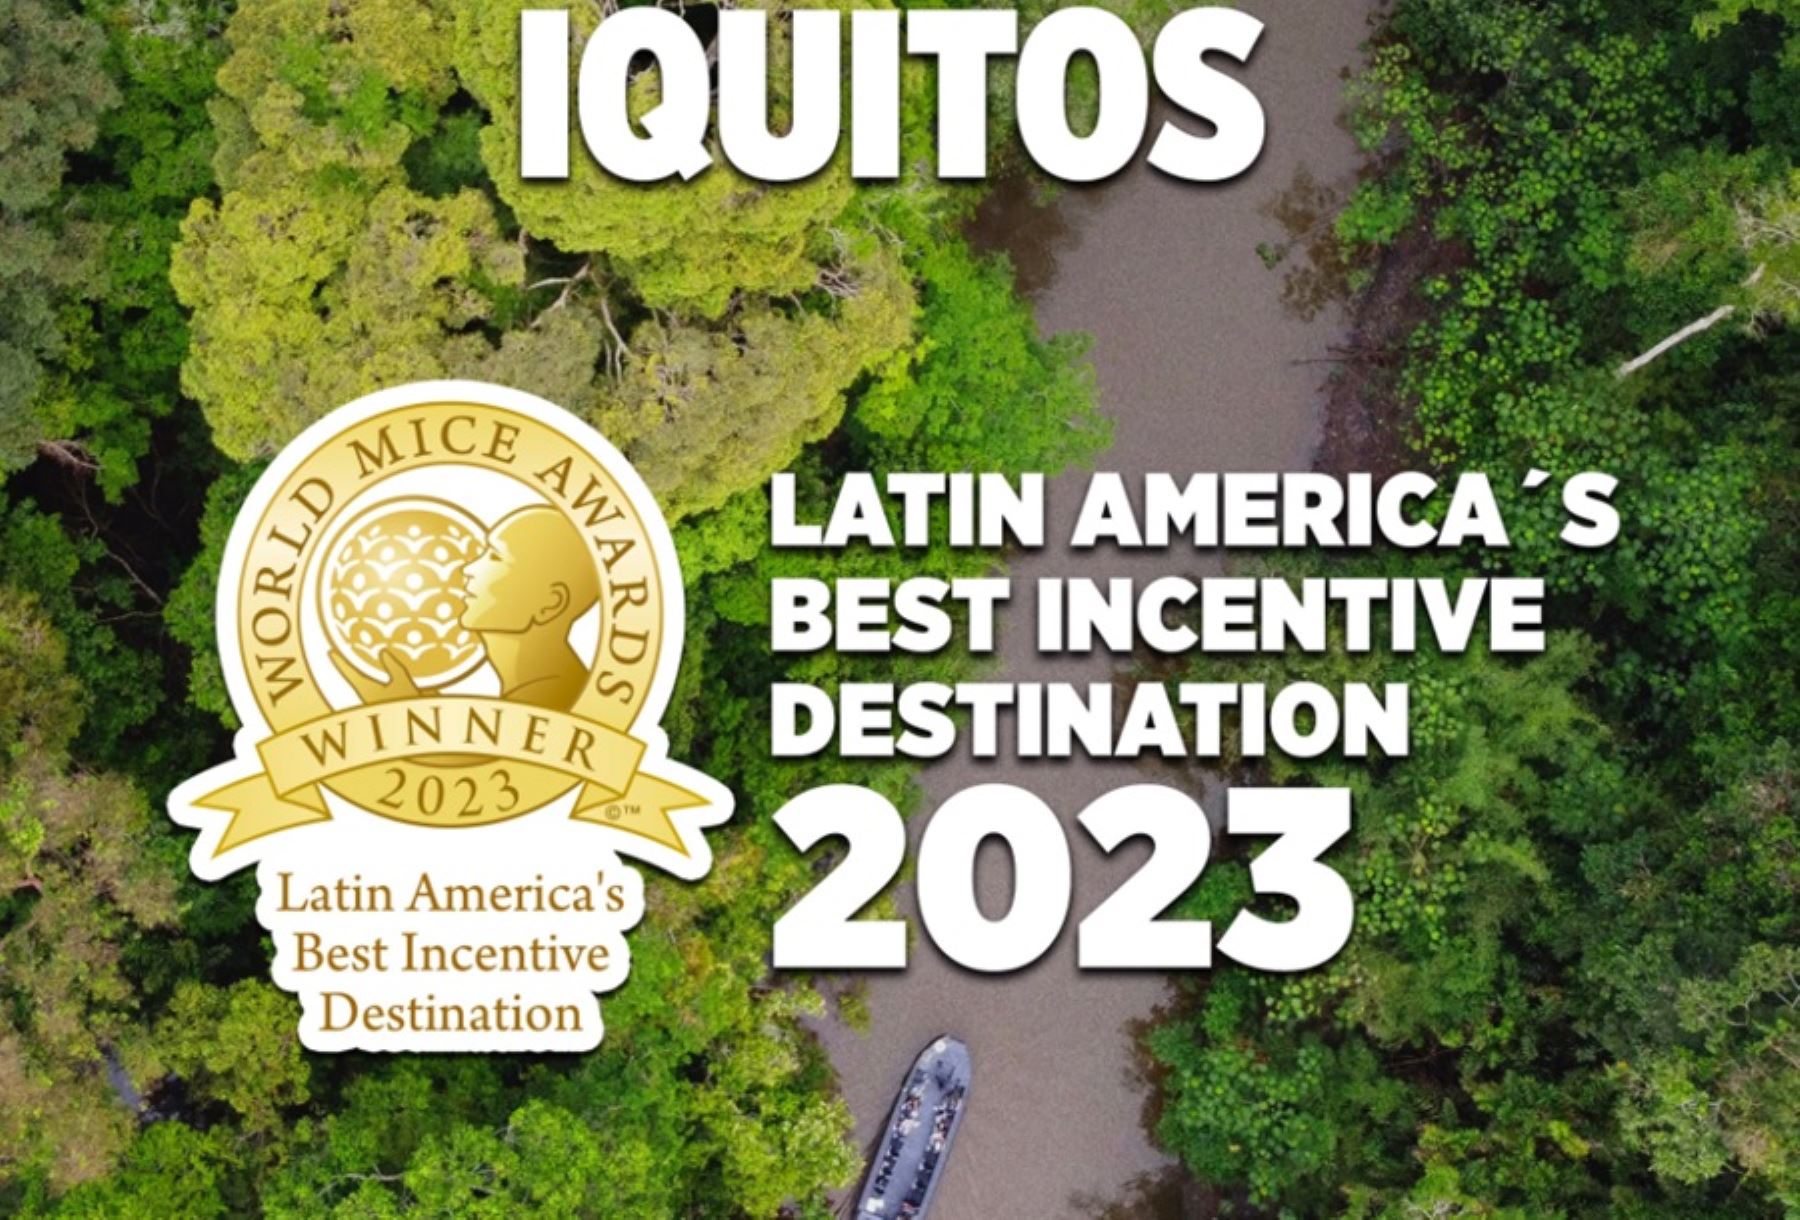 La ciudad de Iquitos, capital de la región Loreto, fue reconocida como “Mejor Destino de Incentivos de Latinoamérica” por los World MICE Awards